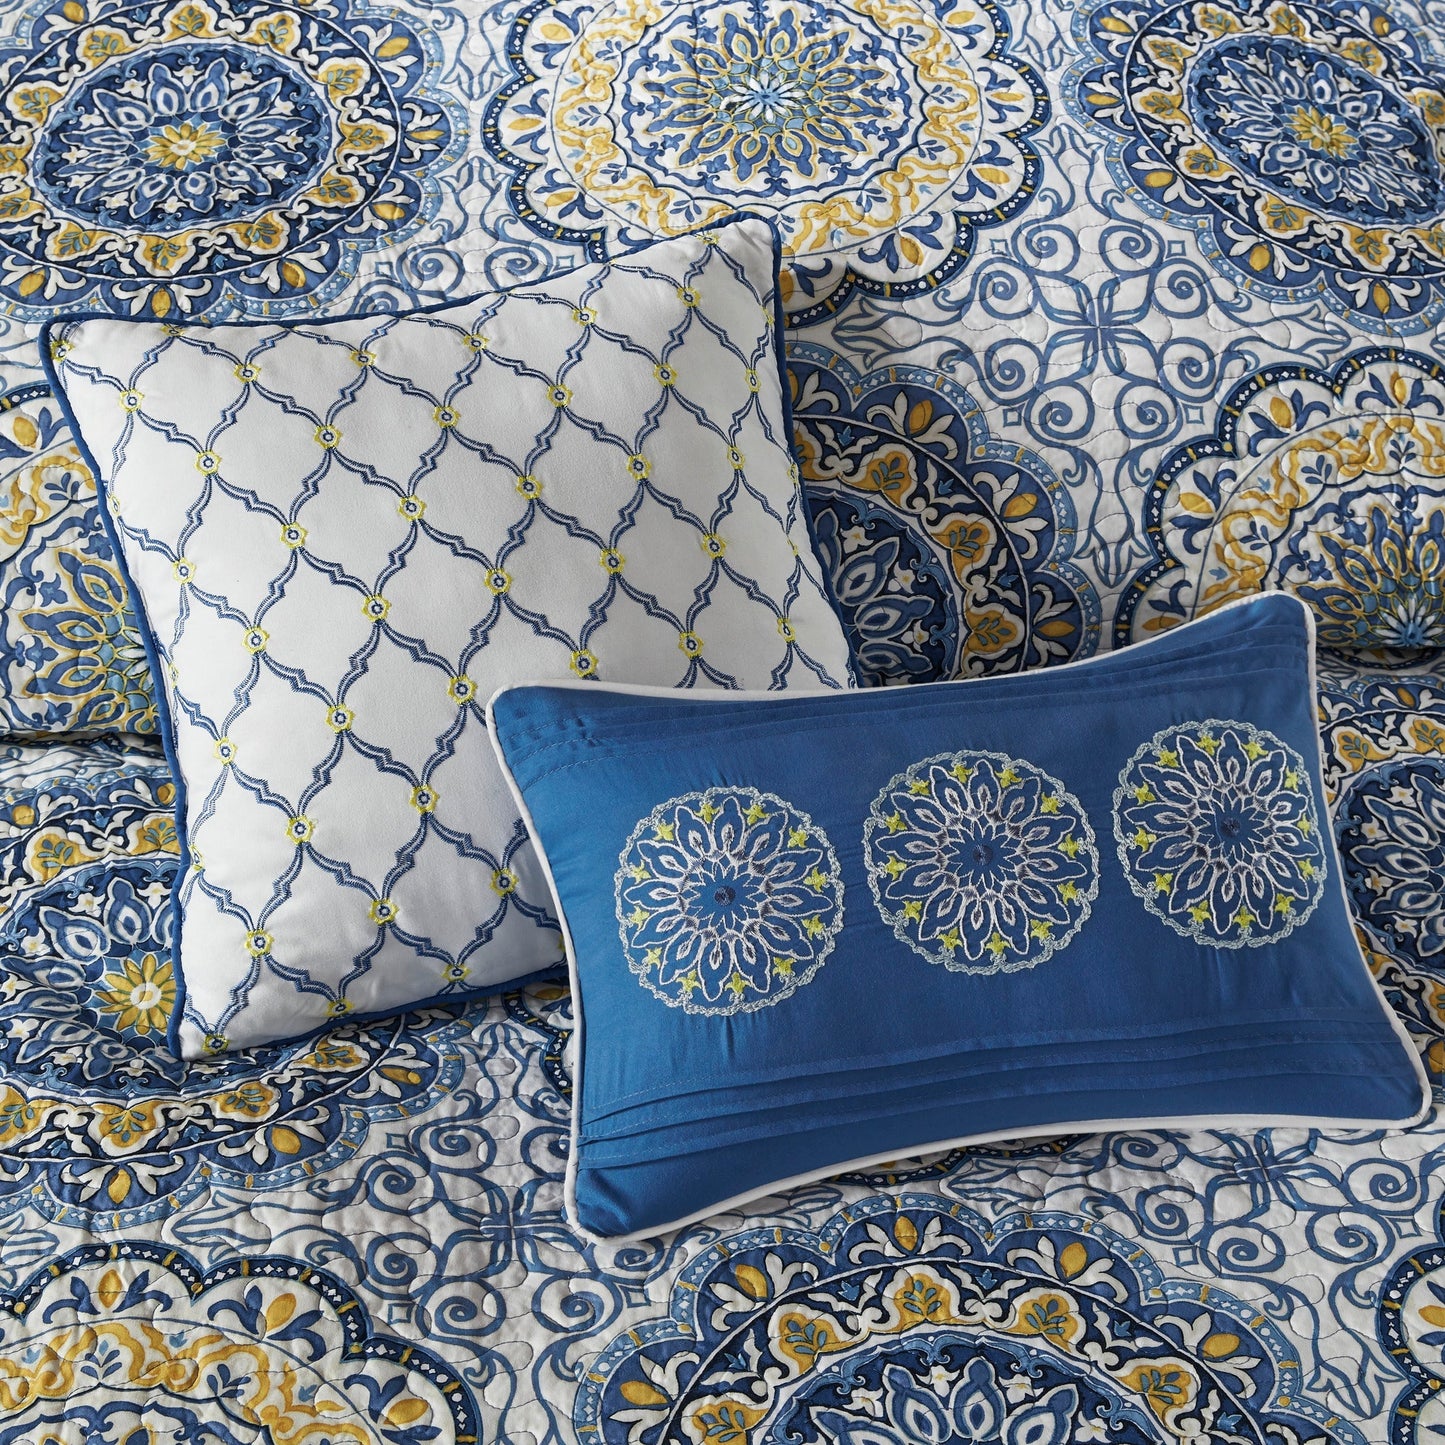 Menara 6 Piece Reversible Quilt Set with Throw Pillows